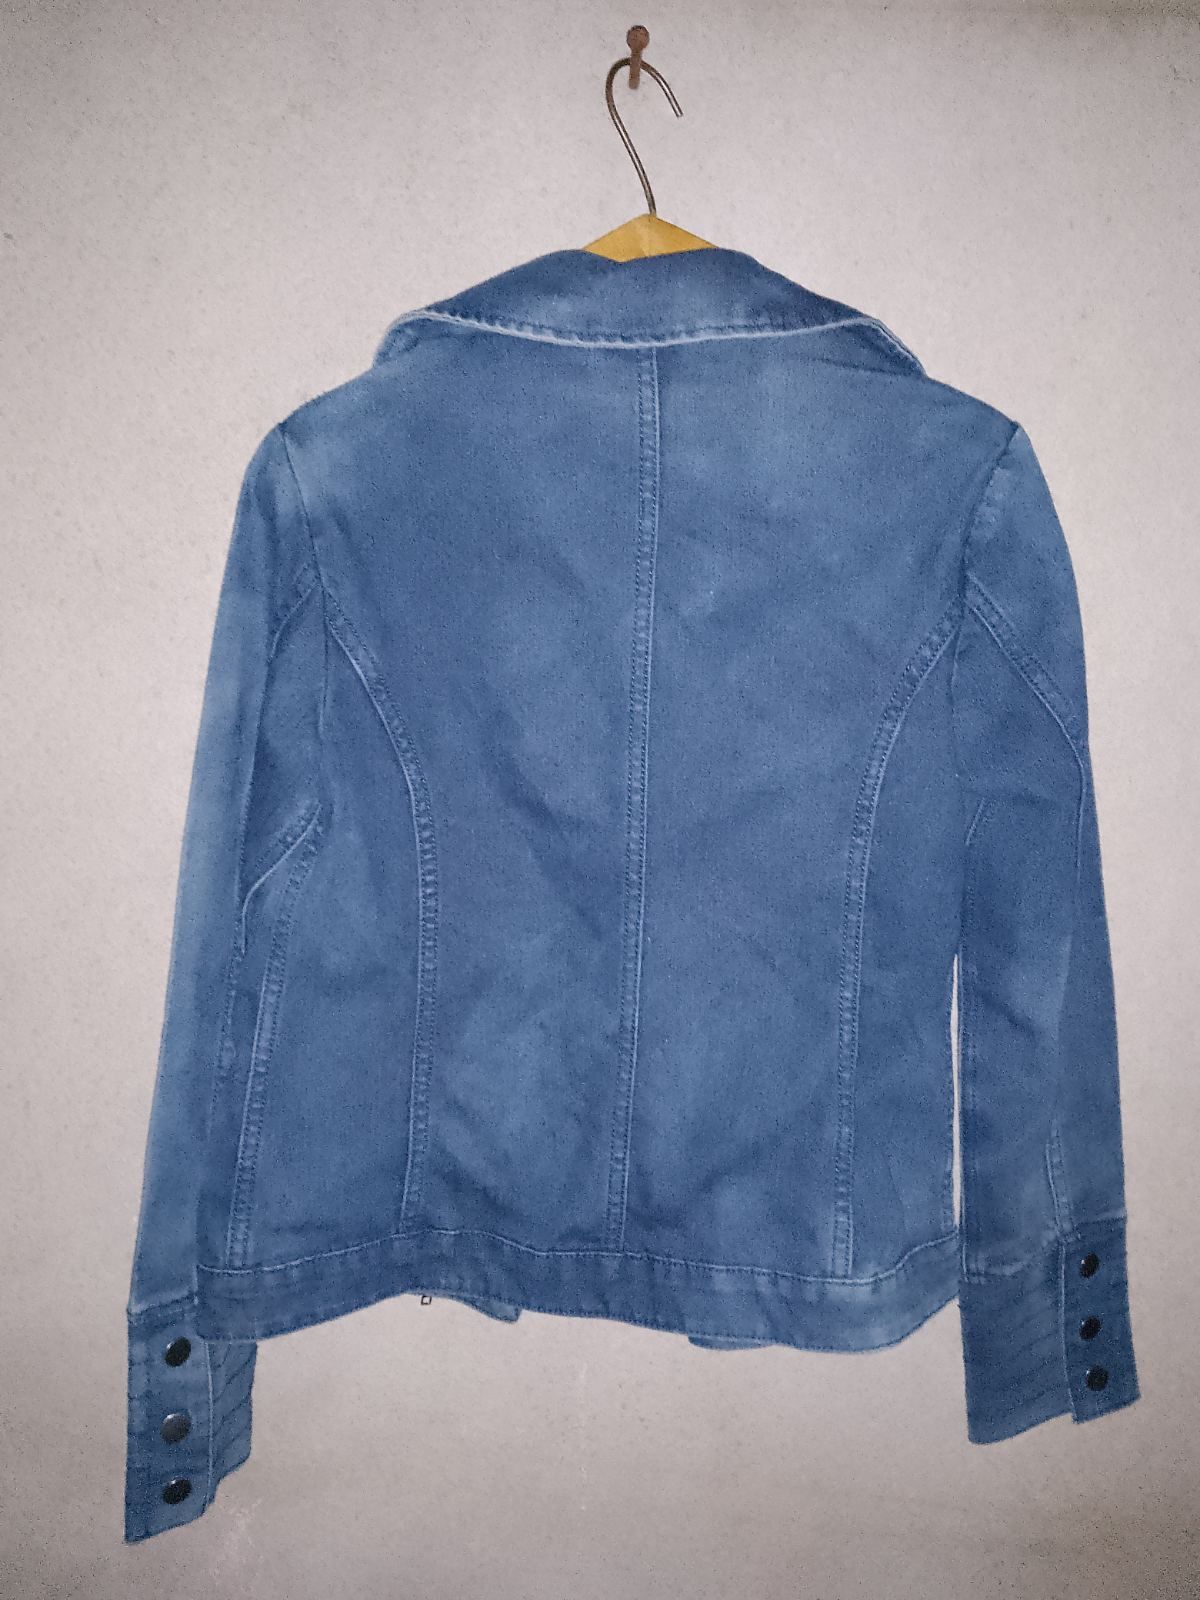 Ціна за 2!!!Джинсова куртка, курточка на 50-52 рр